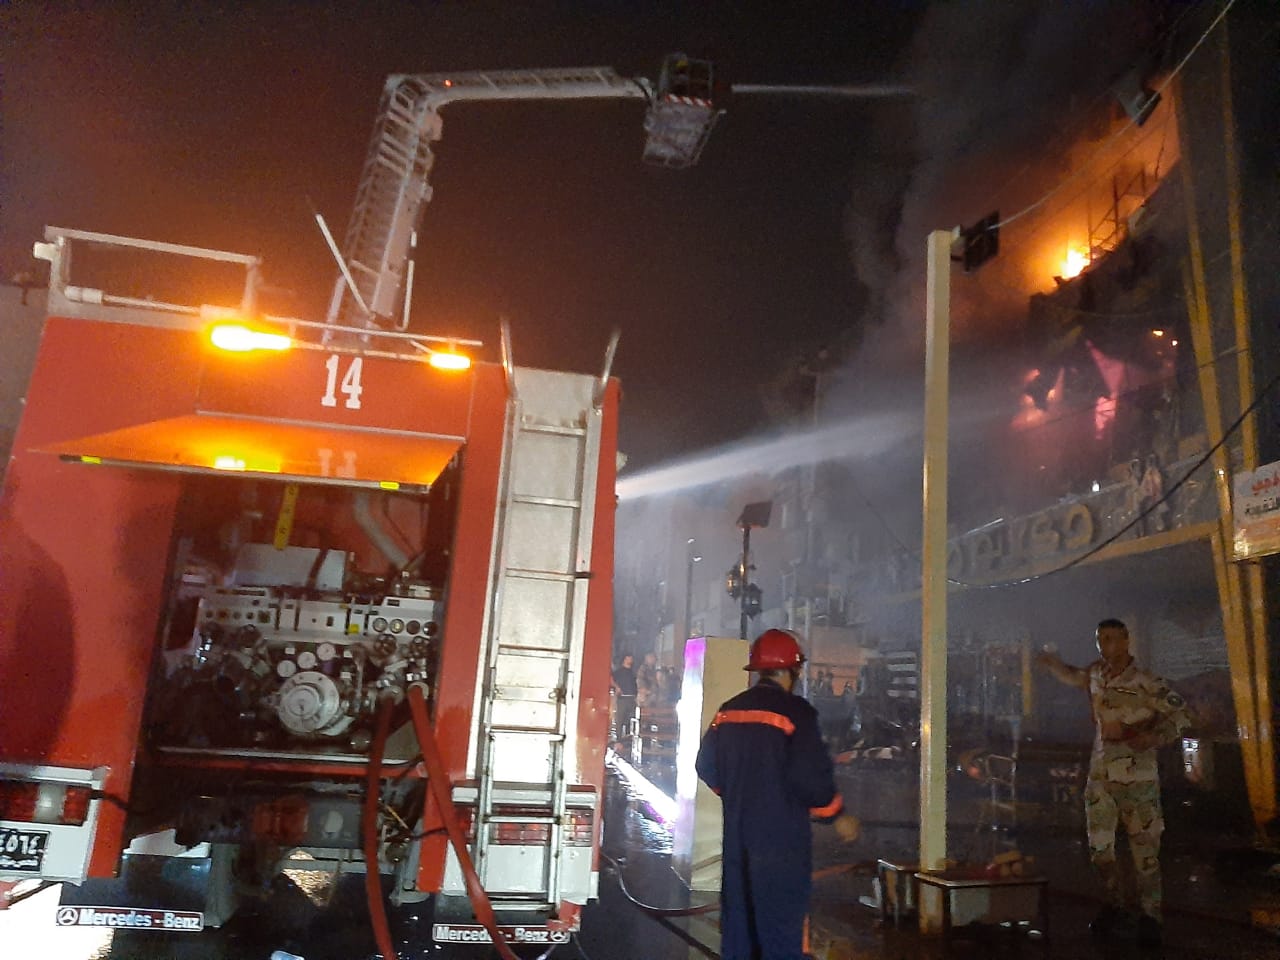 الدفاع المدني يلاقي صعوبة بالتعامل مع حادث حريق كبير ببغداد